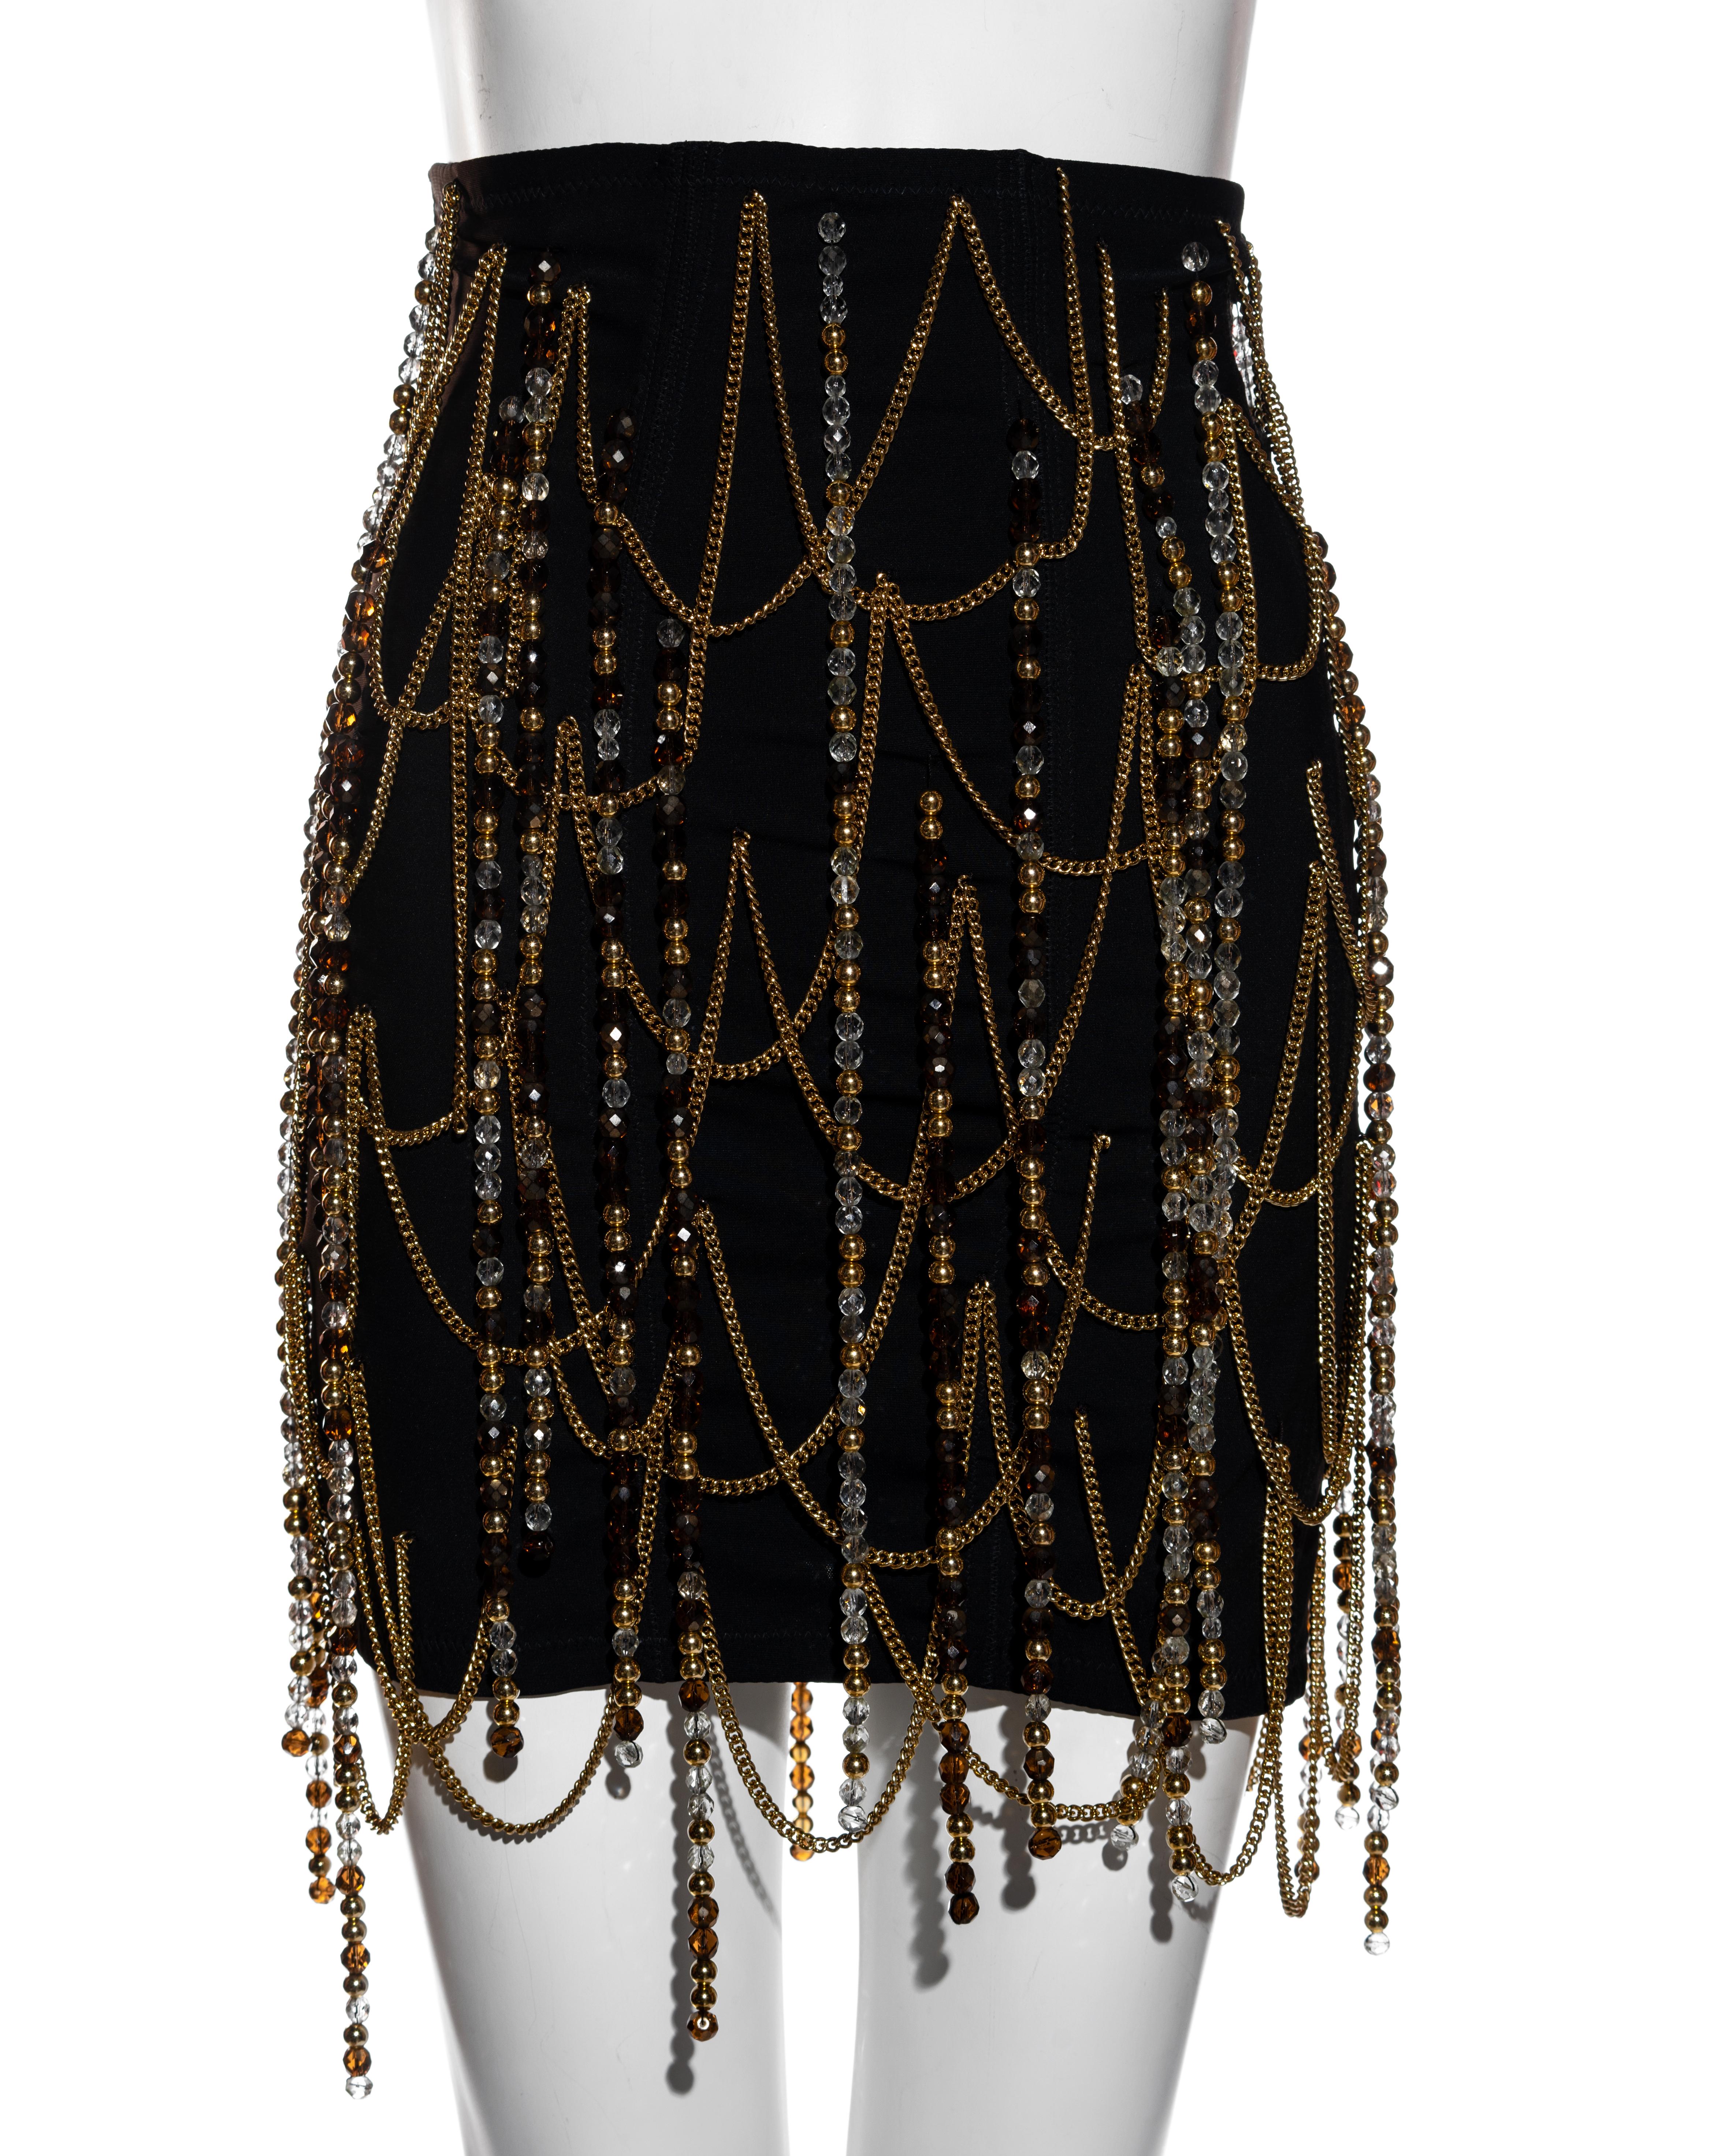 ▪ Dolce & Gabbana Schwarzer Minirock mit Korsett 
▪ Goldfarbene Metallkette als Detail 
▪ Perlenquasten 
▪ Metallhakenverschlüsse in der hinteren Mitte 
▪ IT 42 - FR 38 - UK 10 - US 6
▪ Frühjahr-Sommer 1991